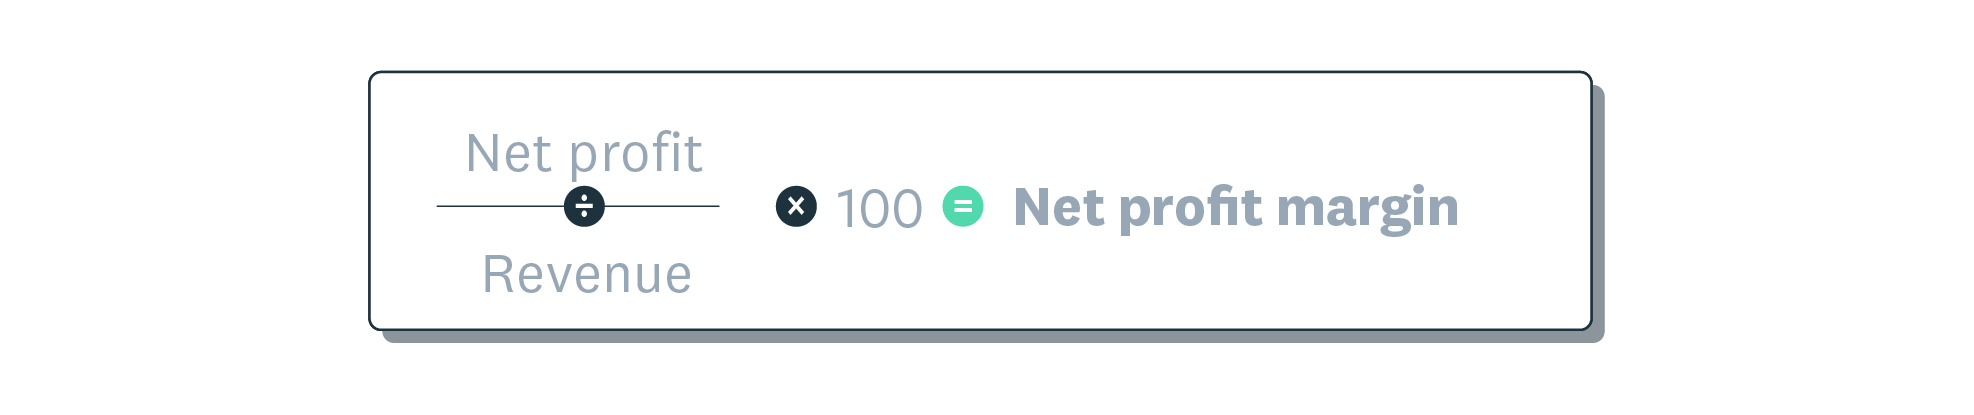 Formula for net profit margin shows that net profit divided by revenue, times 100, equals net profit margin.